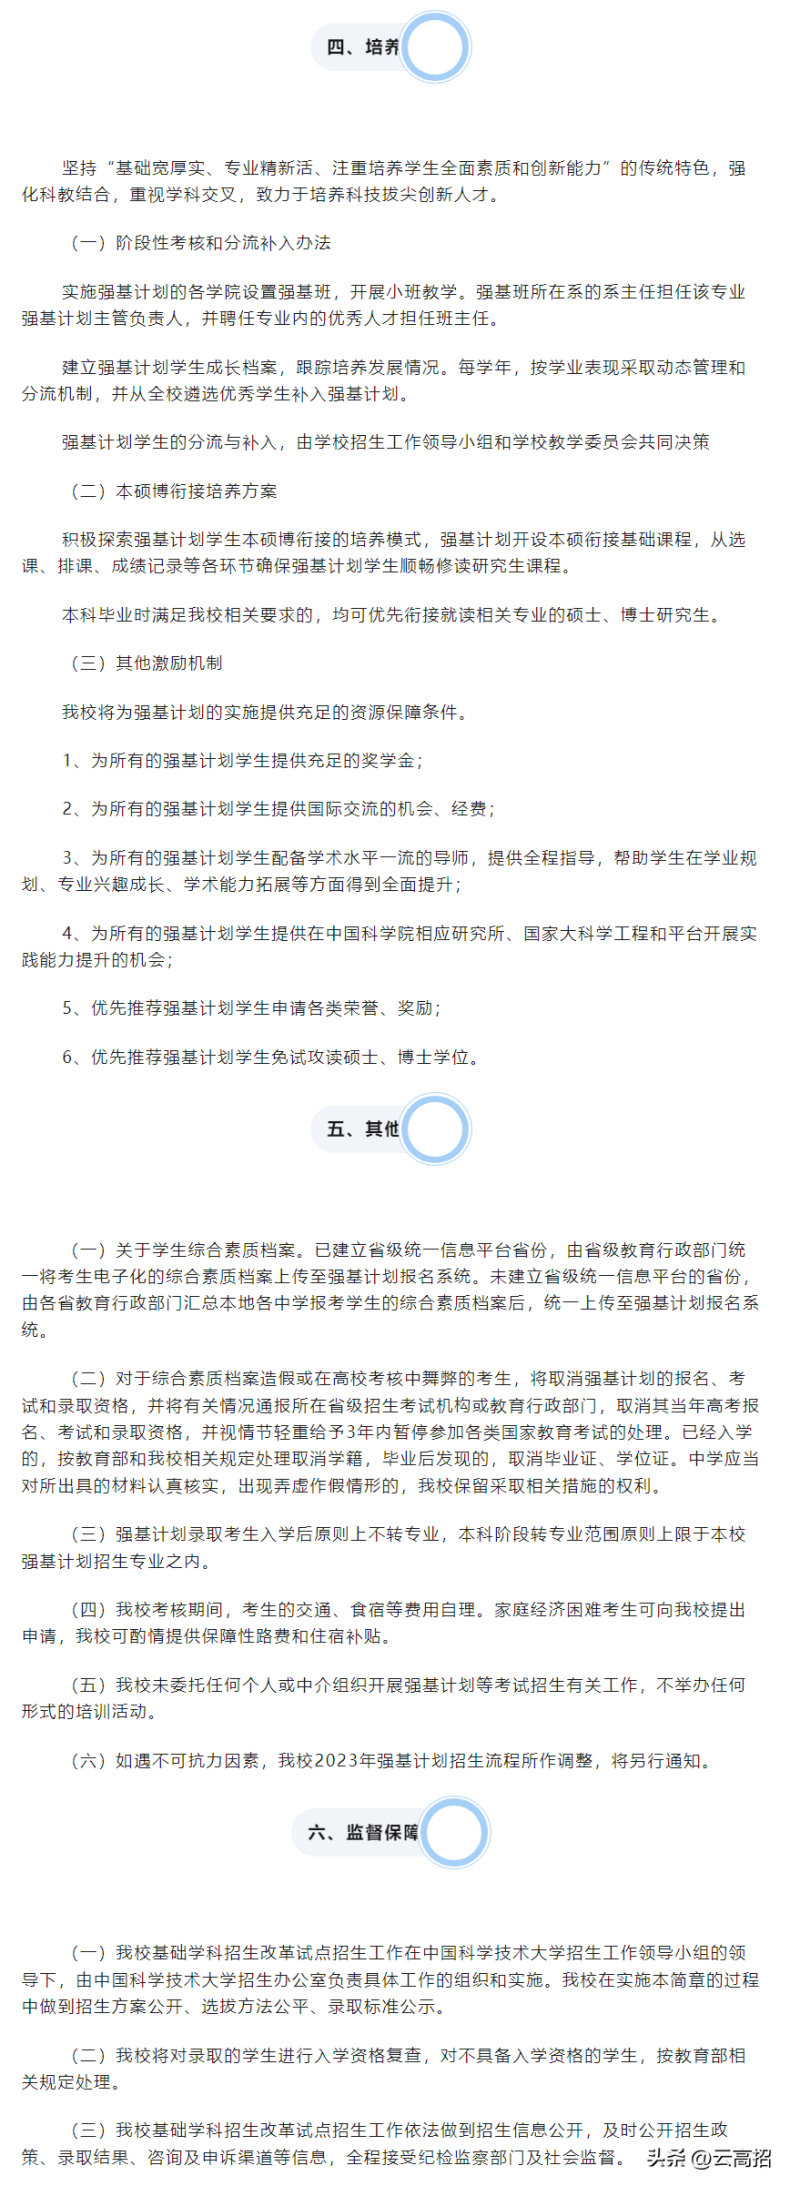 中国科学技术大学2023年强基计划招生简章-1